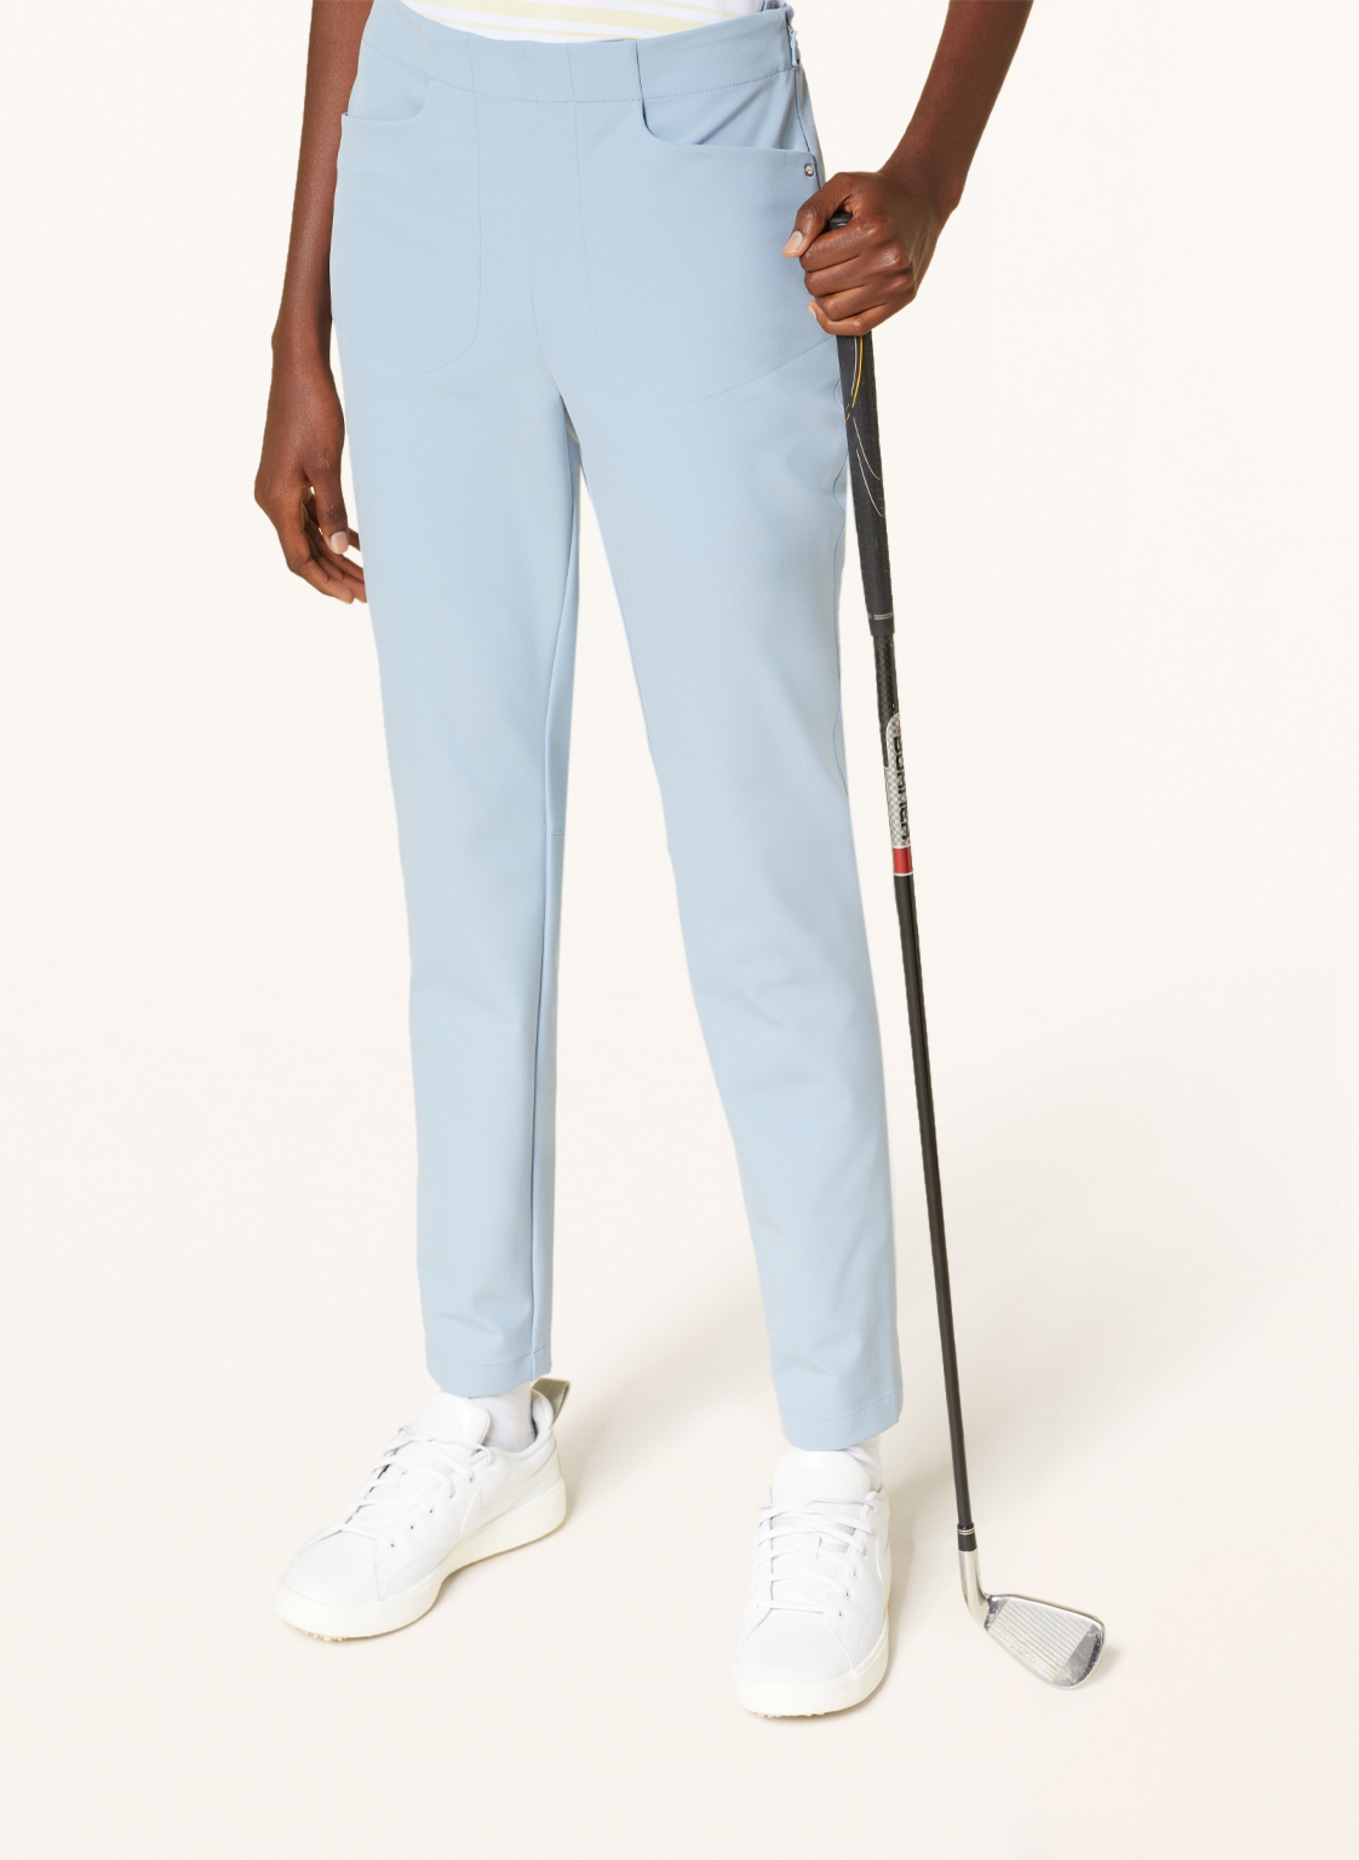 Men's Ralph Lauren RLX Golf Trousers Grey Insulated Water Wind Repellent  (W34L) | eBay